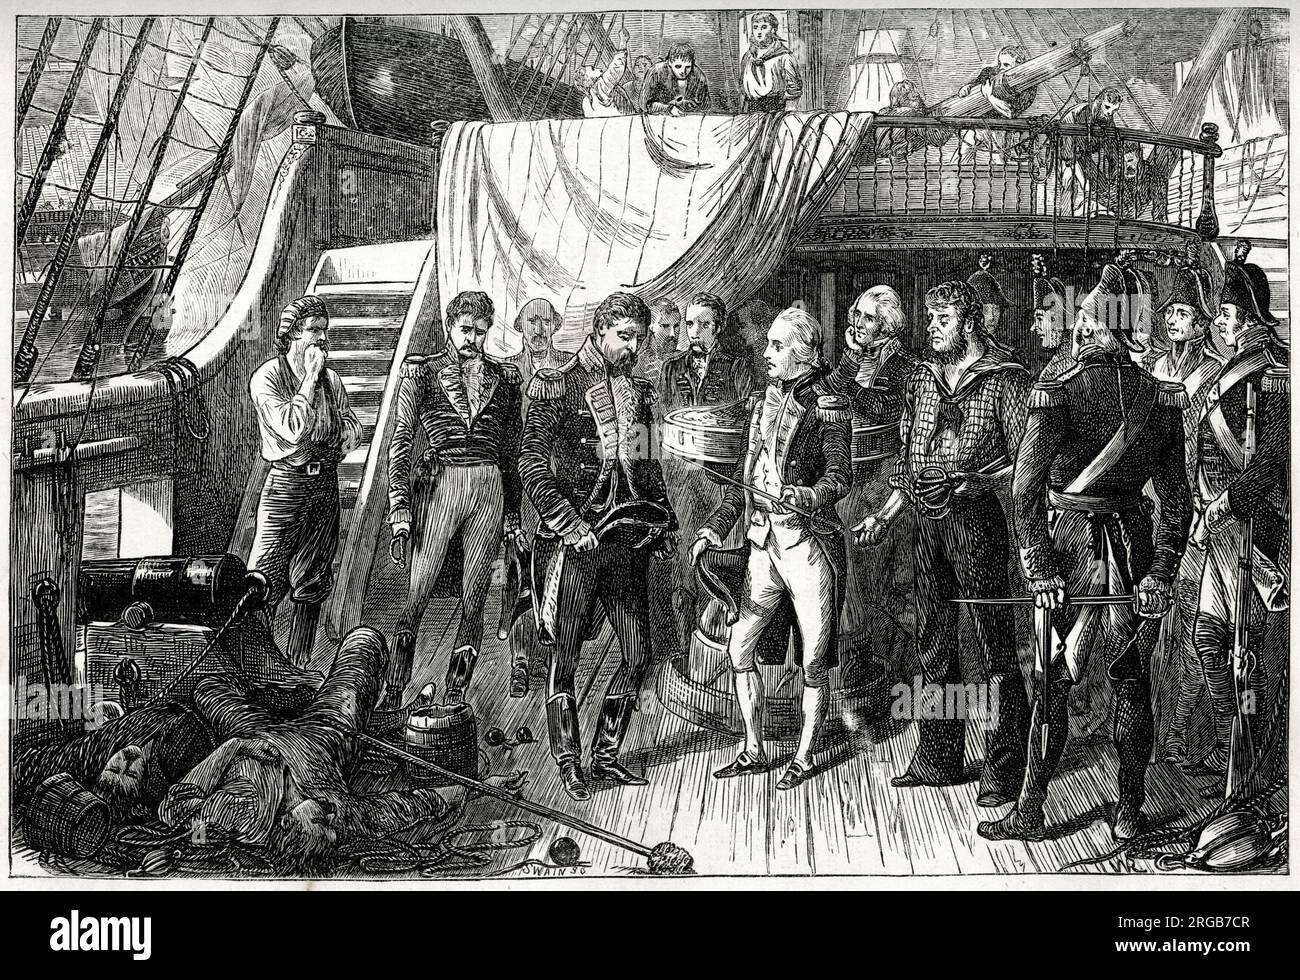 Nelson recevant les épées (comme symbole de la reddition) à bord du San José (plus tard renommé HMS San Josef), un navire capturé de la marine espagnole pendant la bataille de Cap St Vincent, sud du Portugal, 14 février 1797, pendant la guerre anglo-espagnole (1796-1808). La flotte britannique sous l'amiral Sir John Jervis a vaincu une flotte espagnole plus importante sous l'amiral Don Jose de Cordoba y Ramos. Banque D'Images